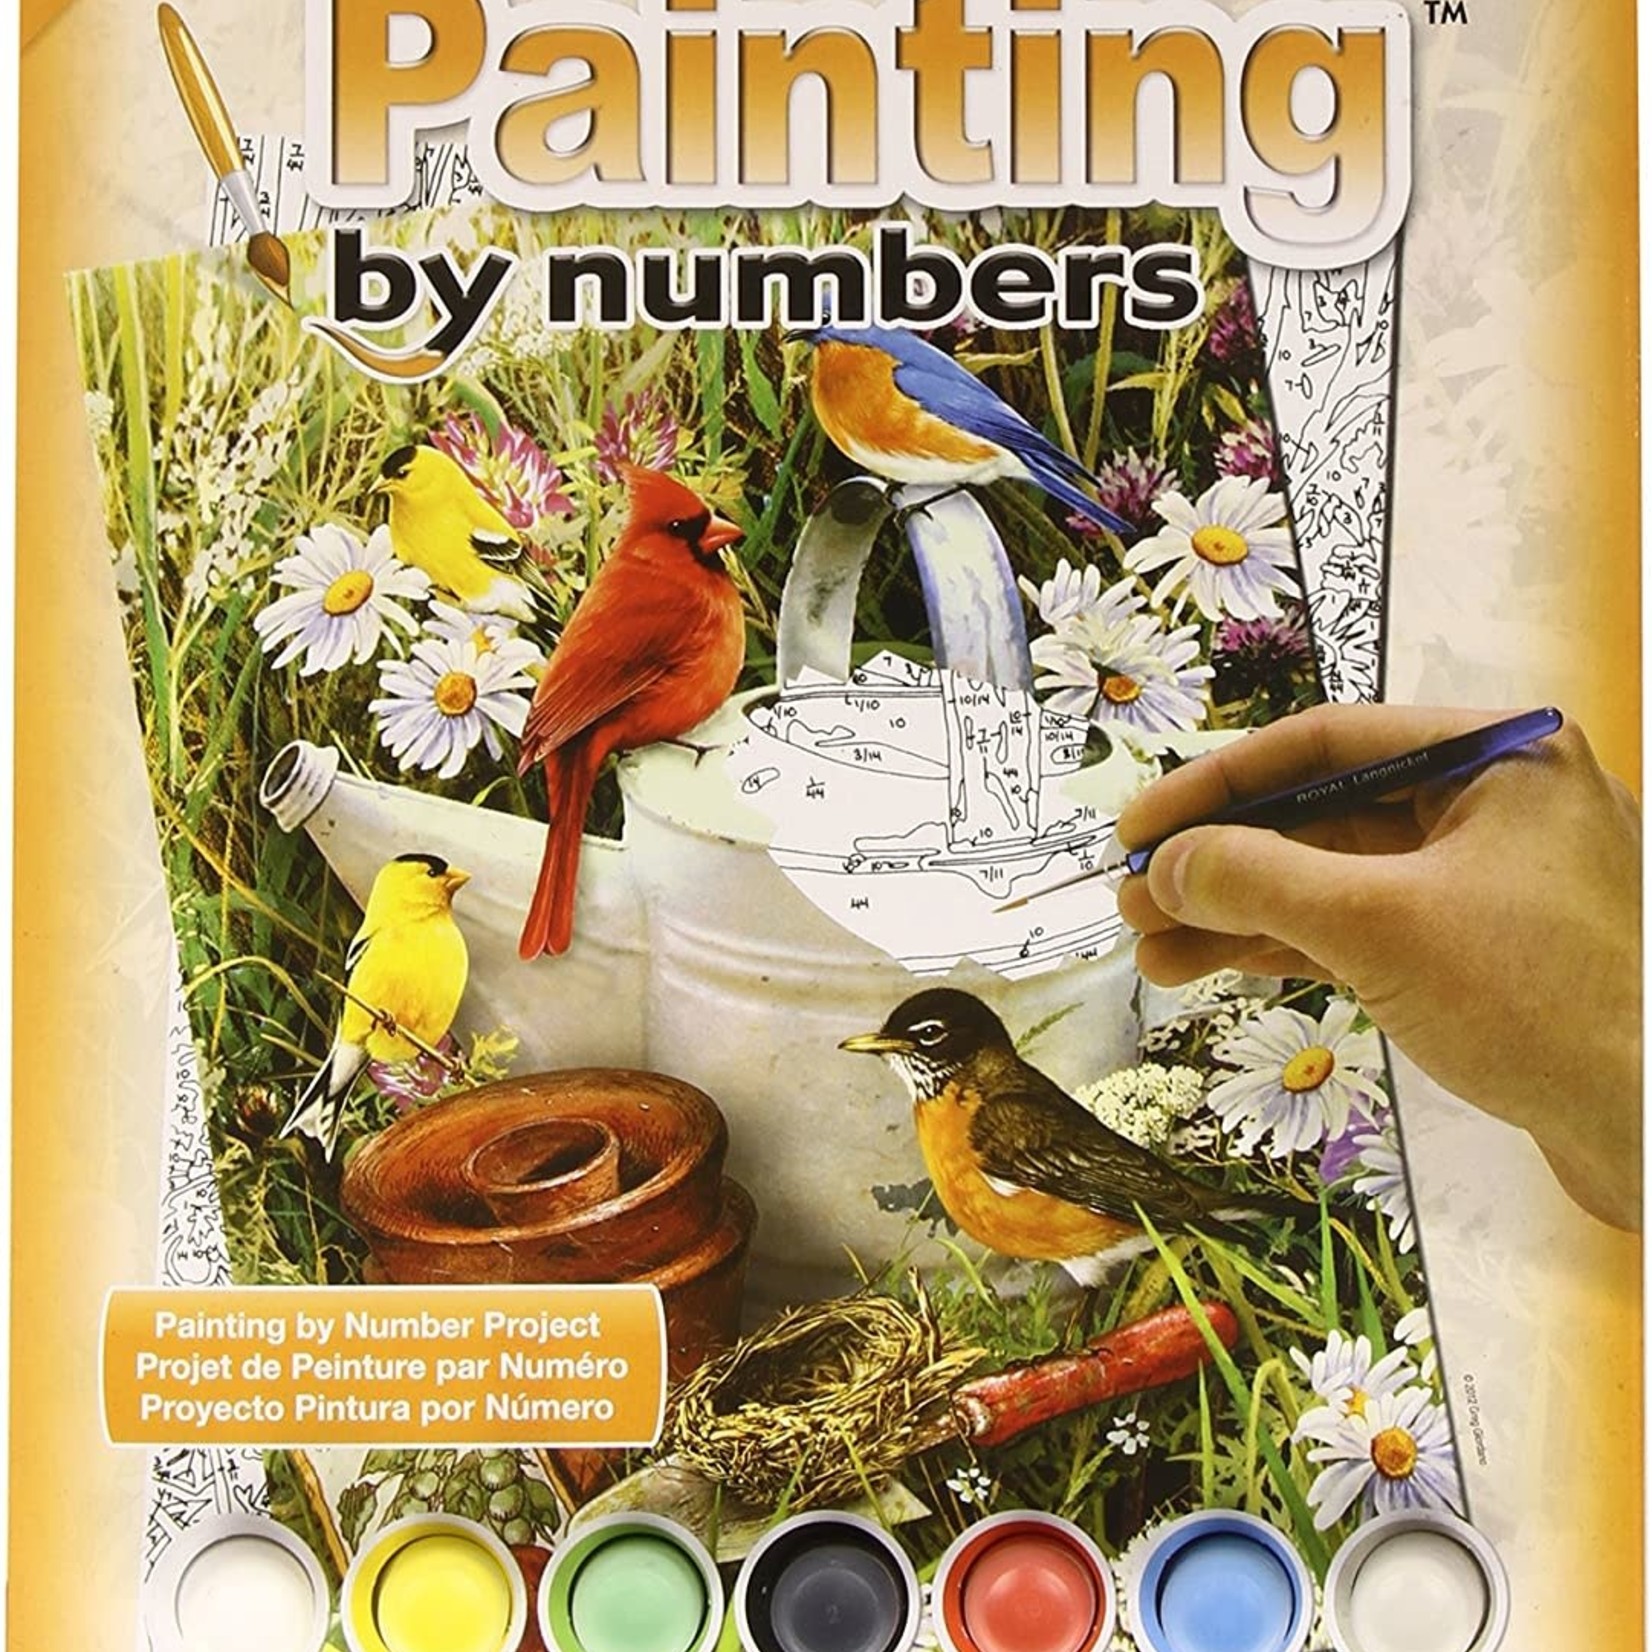 Royal & Langnickel Royal & Langnickel – Painting by Numbers Junior Small - Oiseaux de jardin